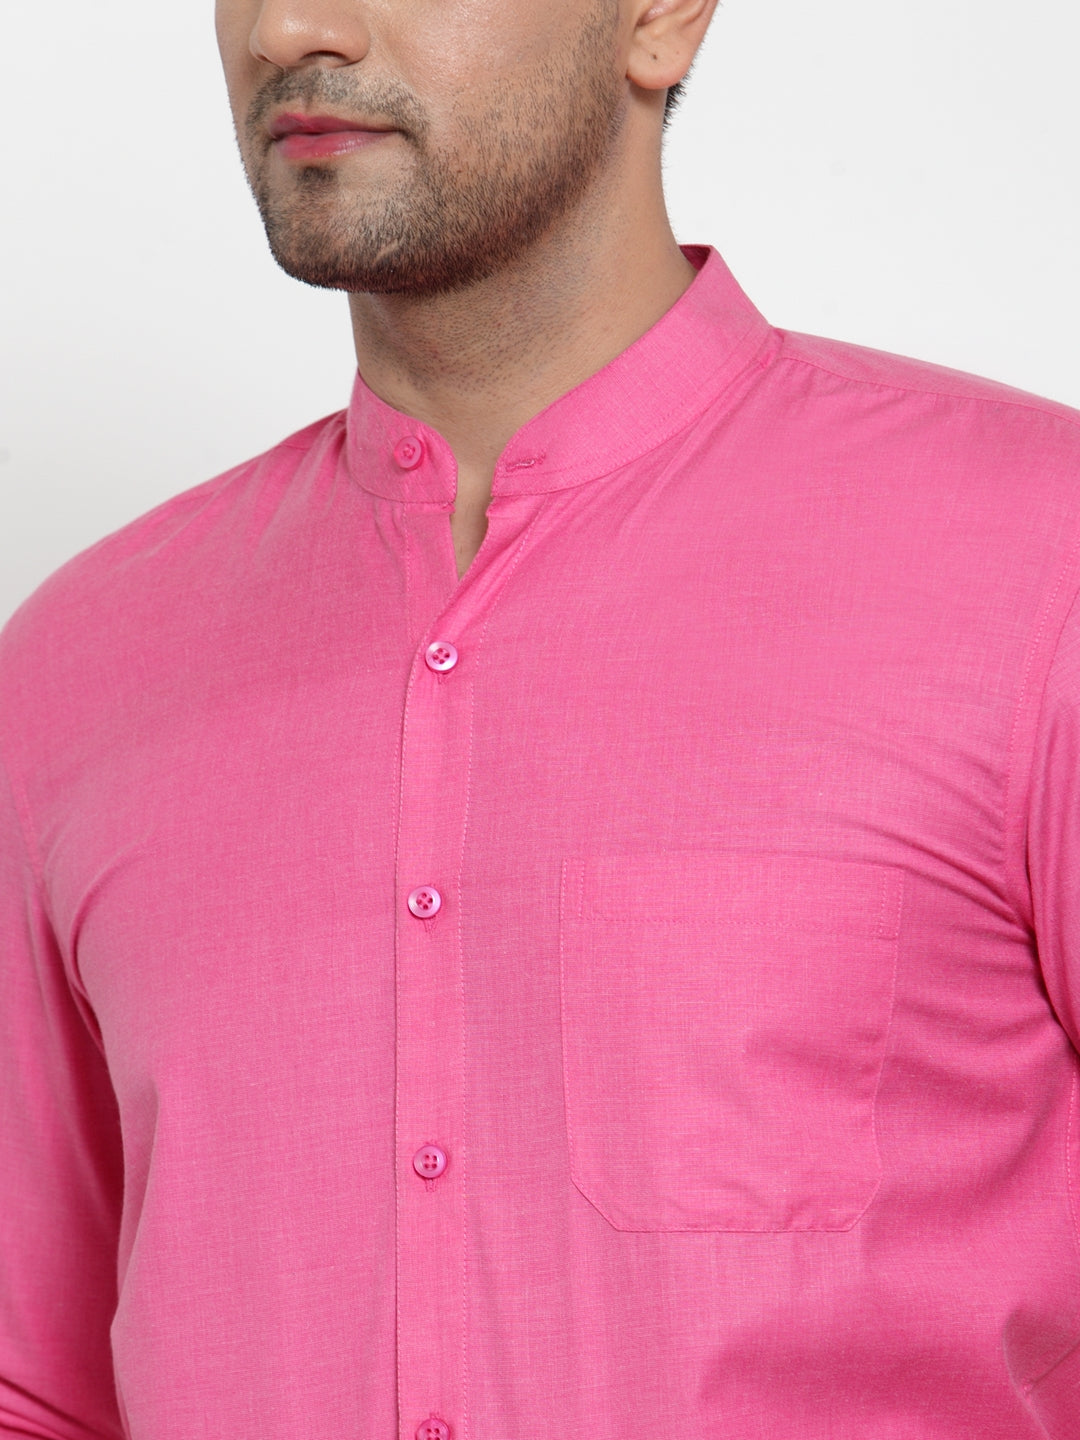 Men's Pink Cotton Solid Mandarin Collar Formal Shirts ( SF 757Pink ) - Jainish